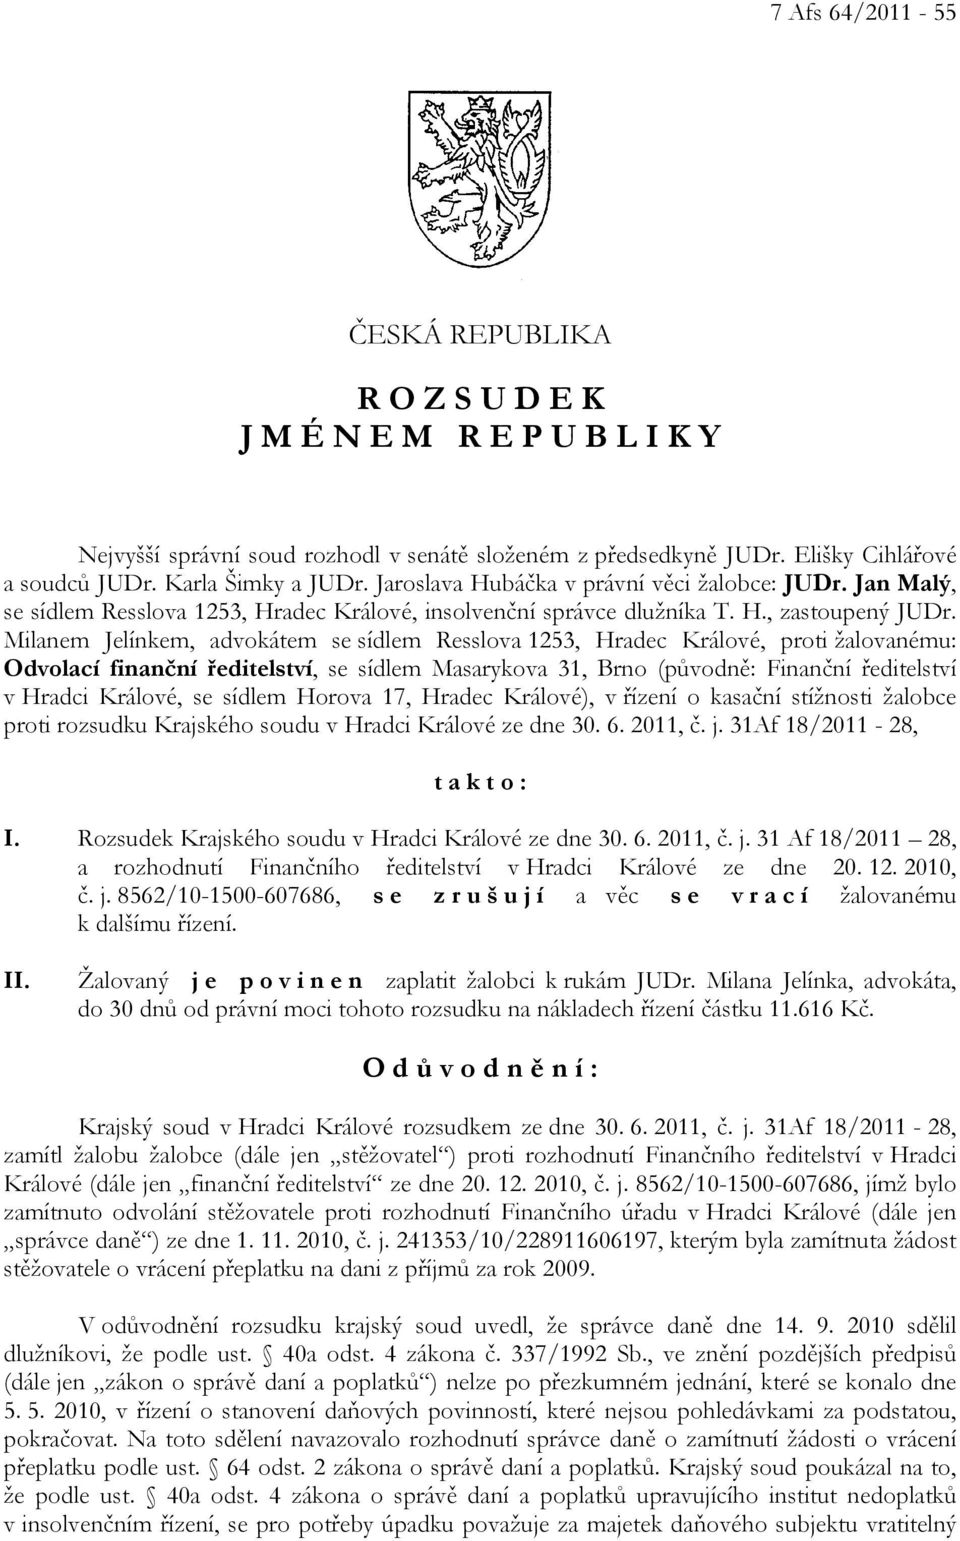 Milanem Jelínkem, advokátem se sídlem Resslova 1253, Hradec Králové, proti žalovanému: Odvolací finanční ředitelství, se sídlem Masarykova 31, Brno (původně: Finanční ředitelství v Hradci Králové, se